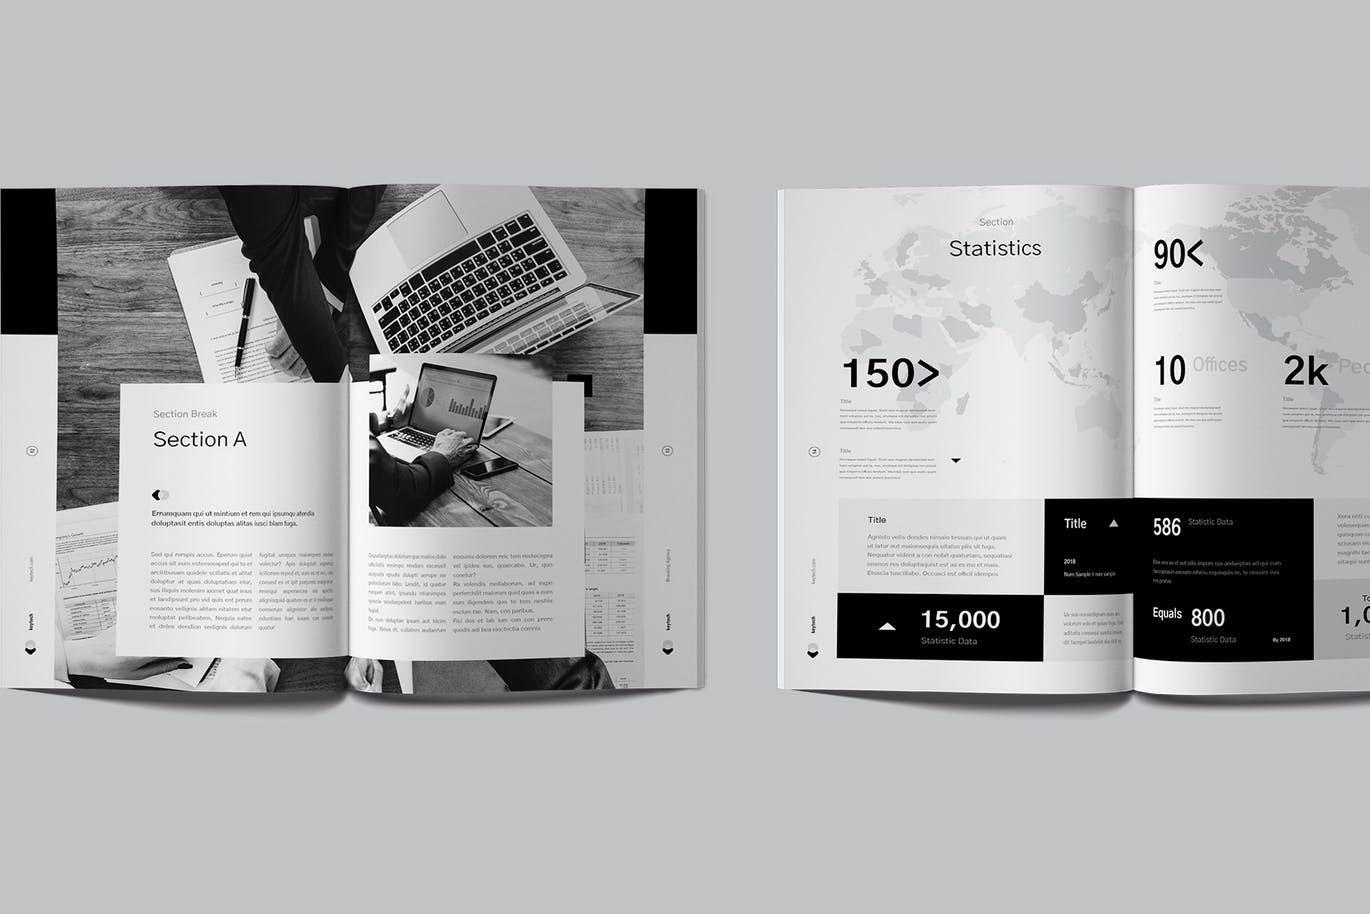 黑白配色的高端时尚的企业简介画册楼书品牌手册杂志设计模板 c